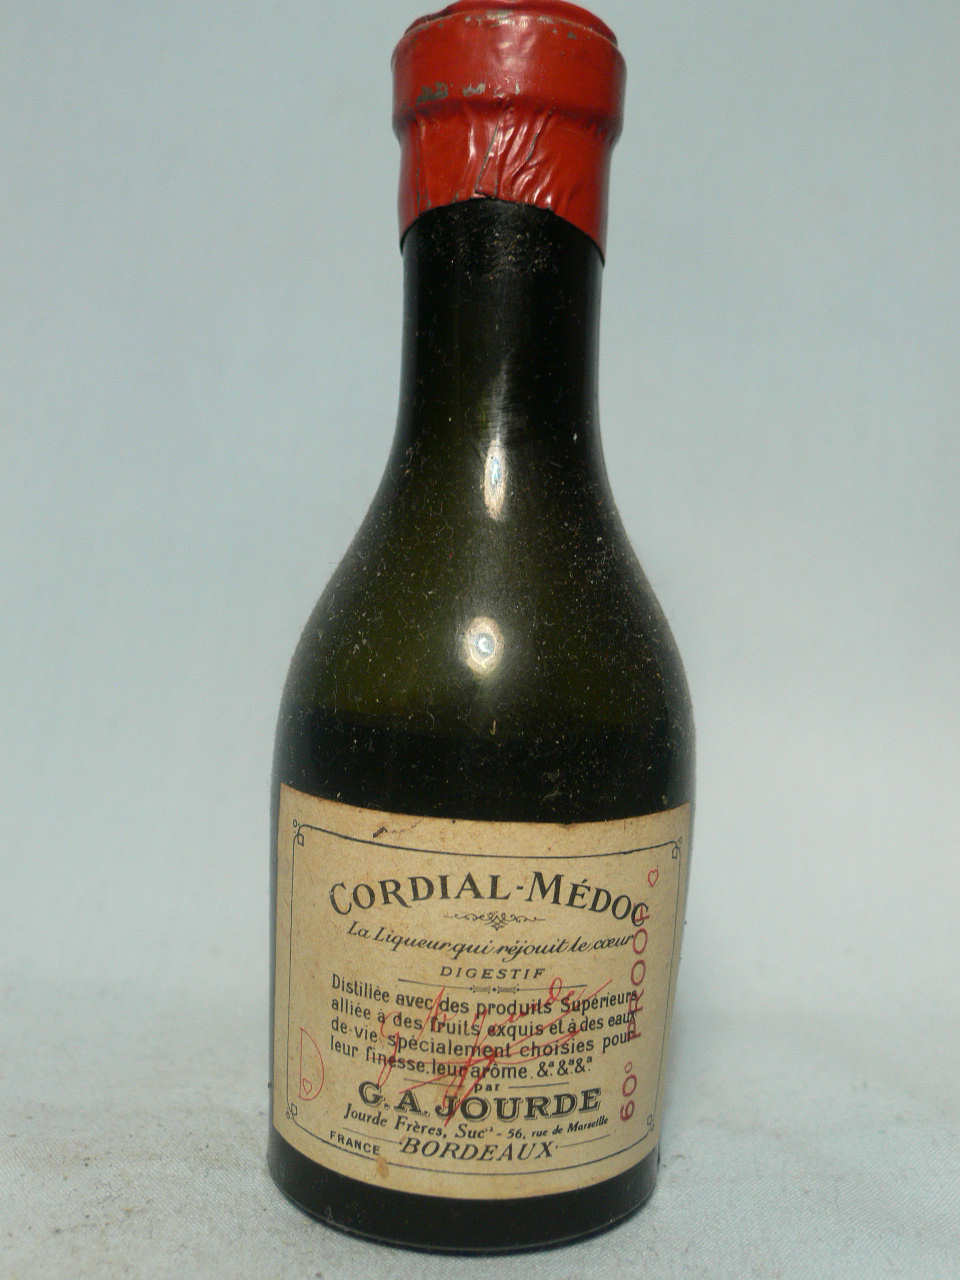 General bottle for sale - bottle code number G640